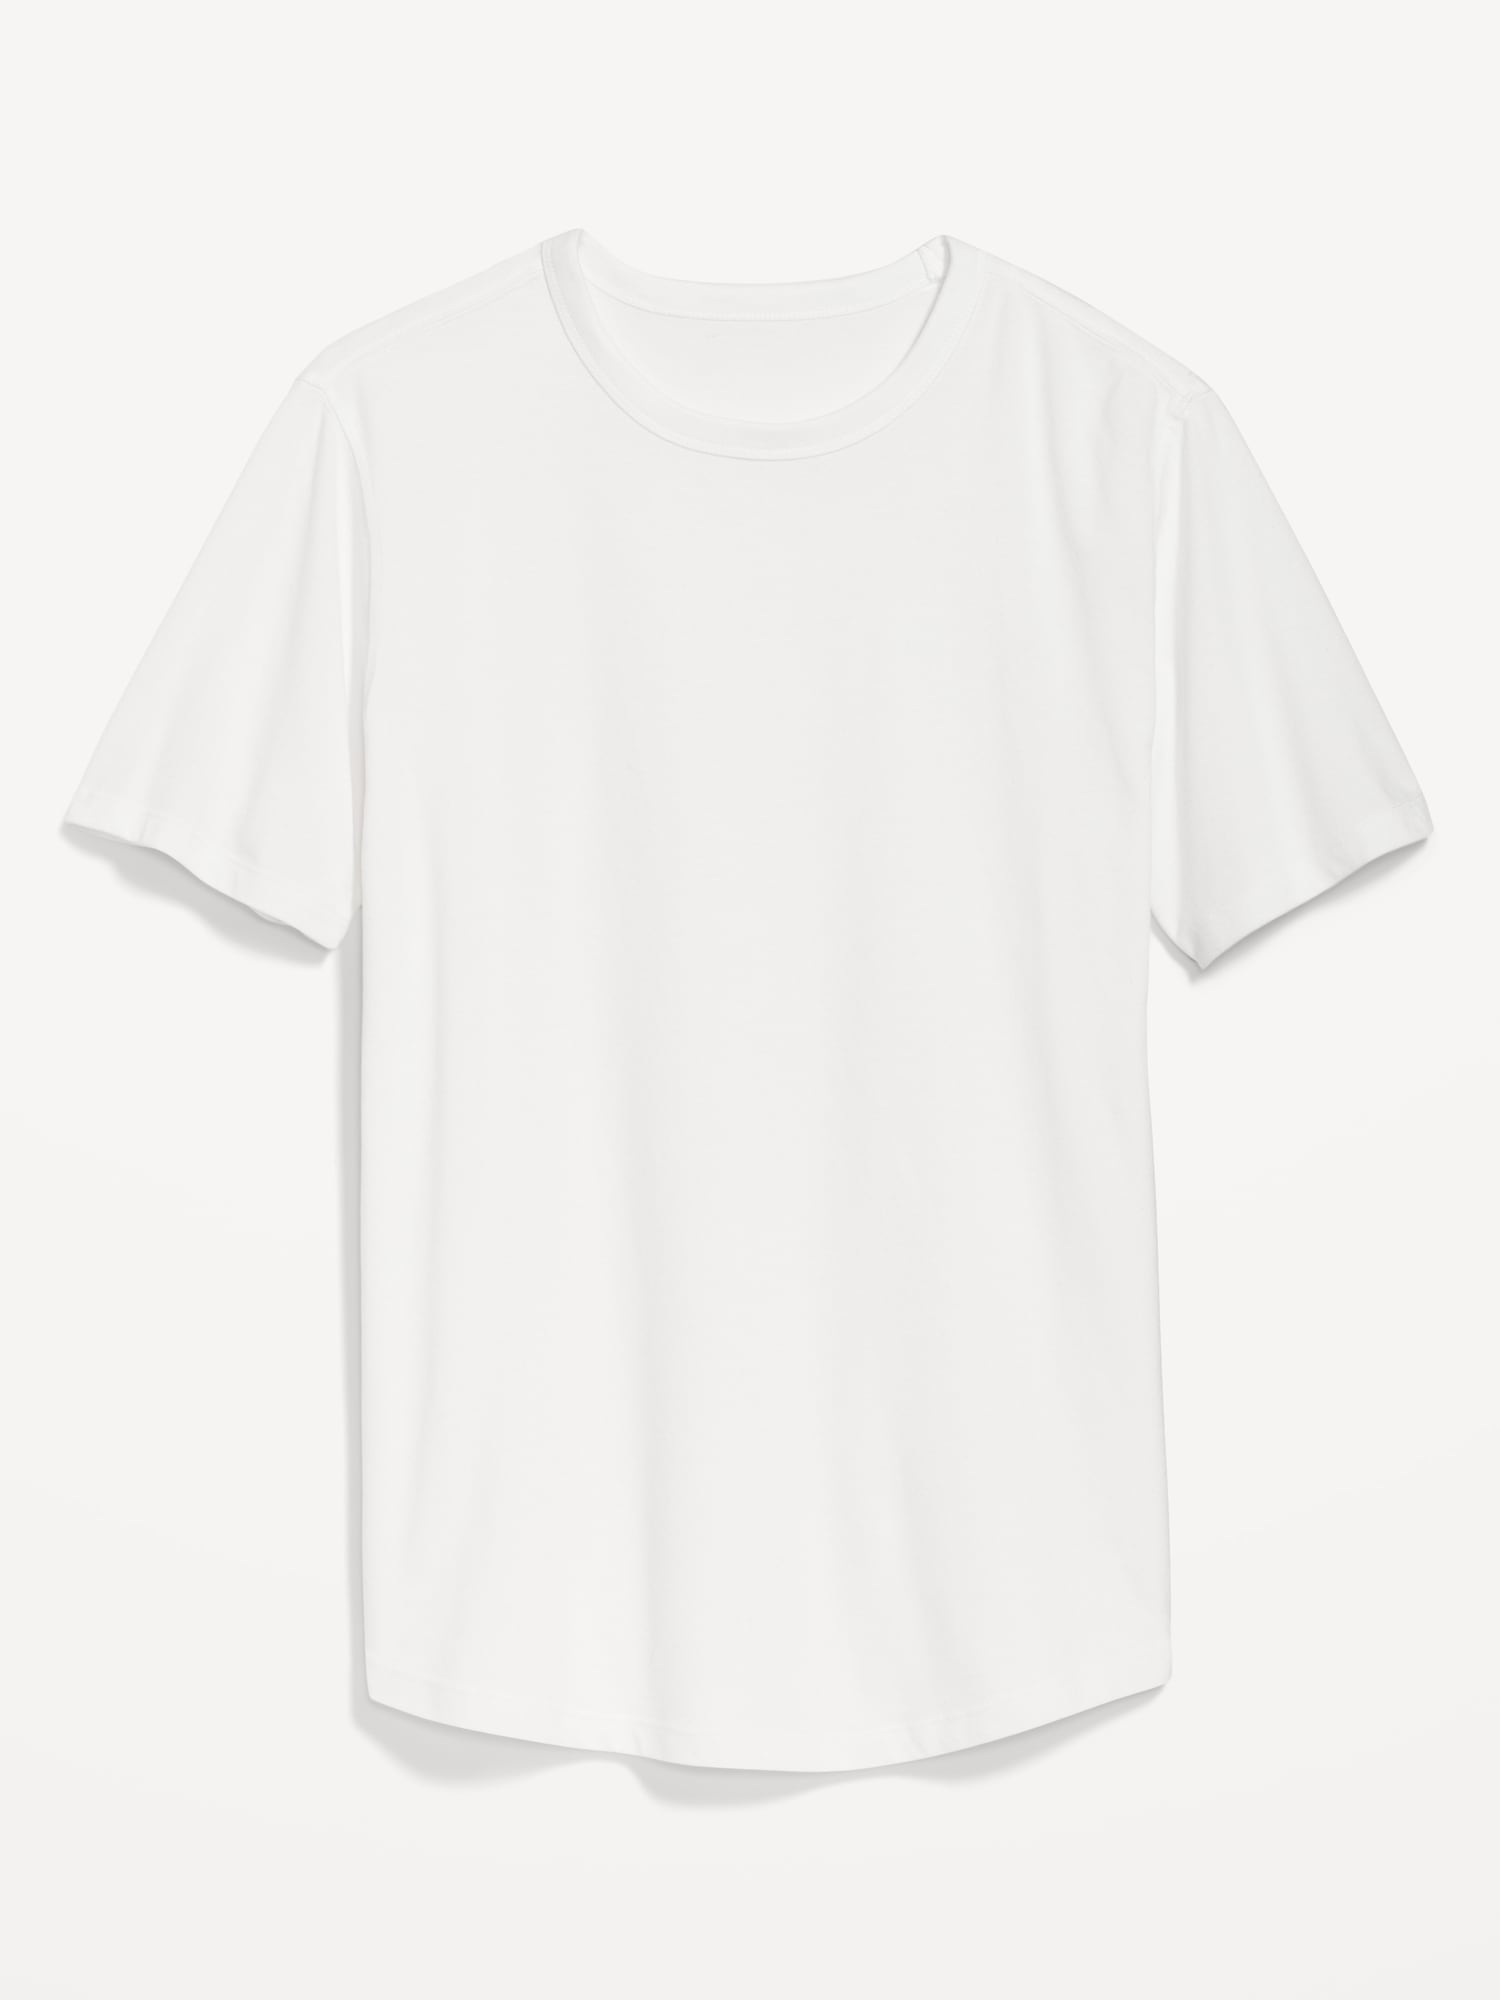 Old Navy Soft-Washed Curved-Hem T-Shirt for Men white. 1